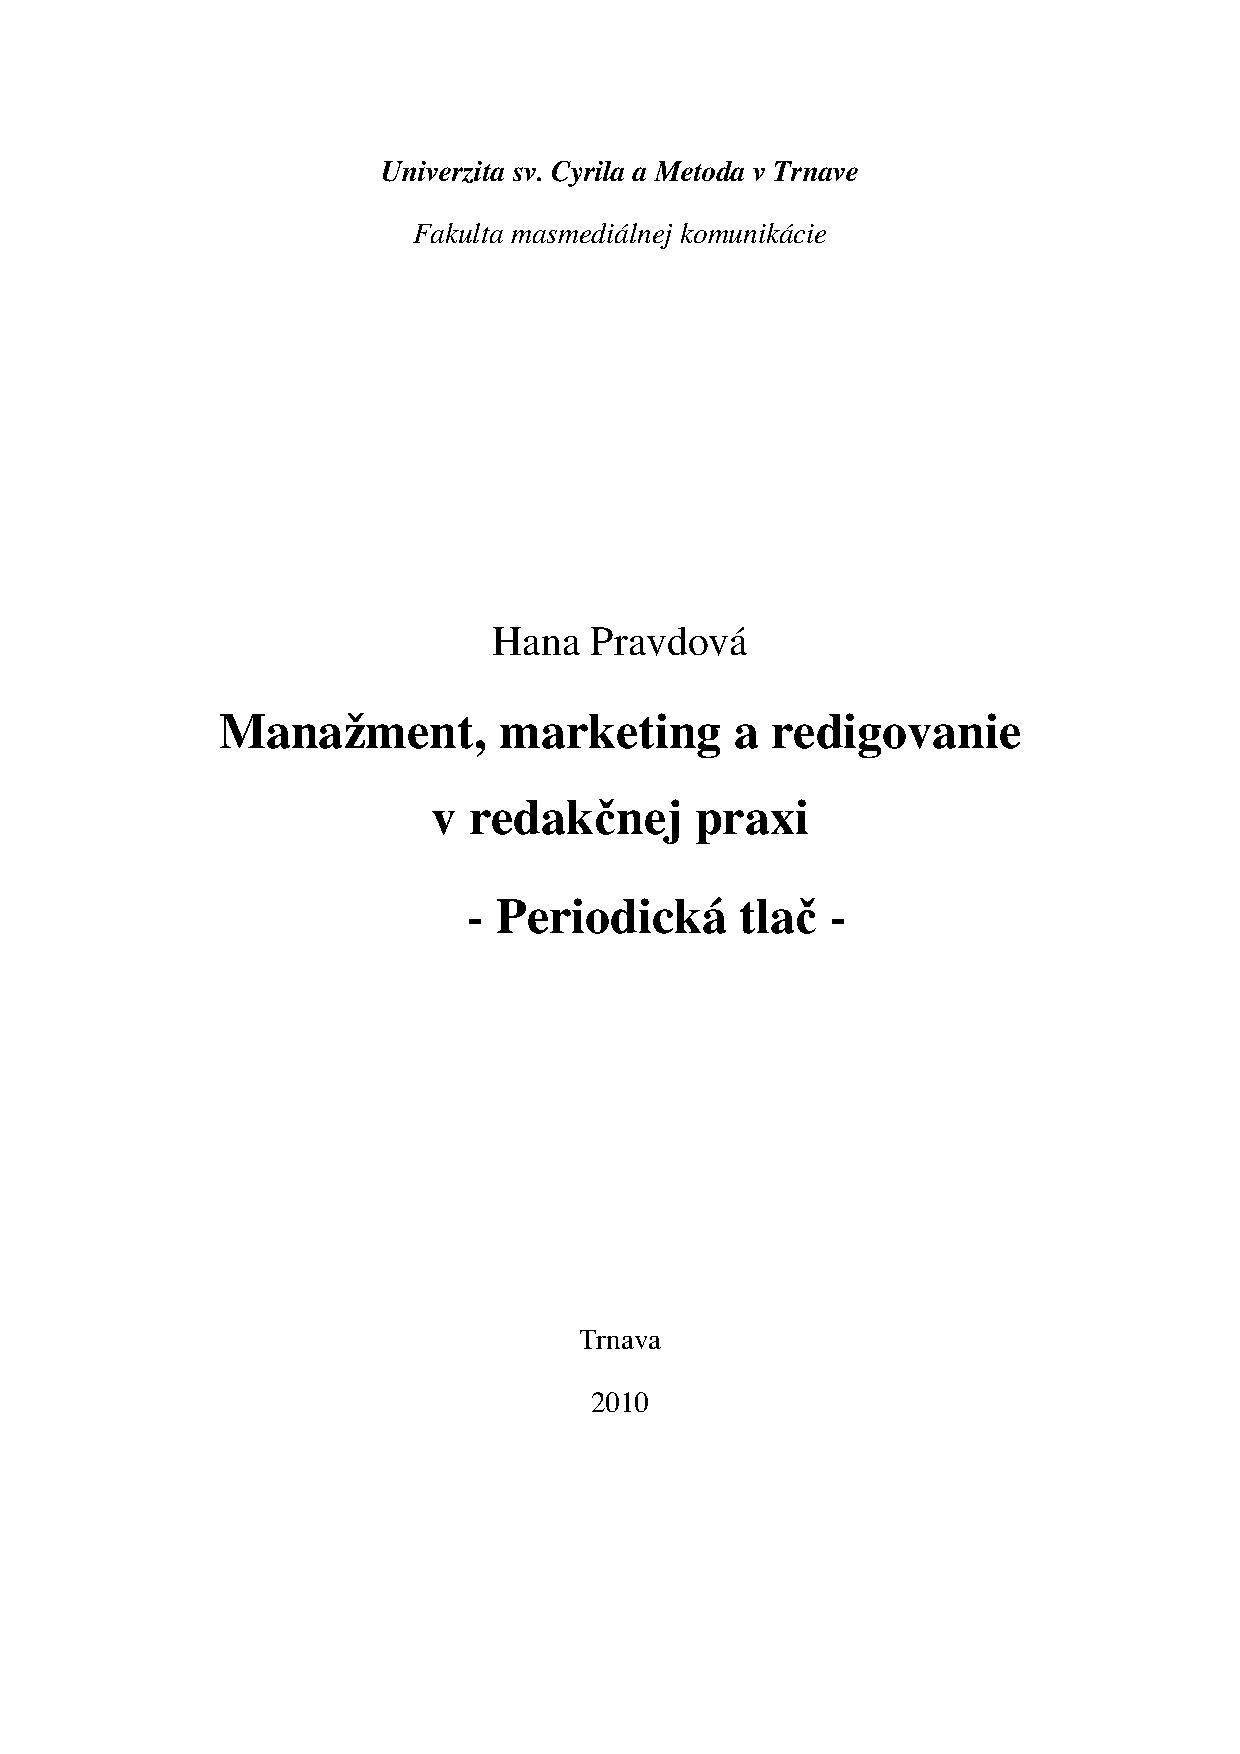 Manažment marketing a redigovanie v redakčnej praxi, Periodická tlač